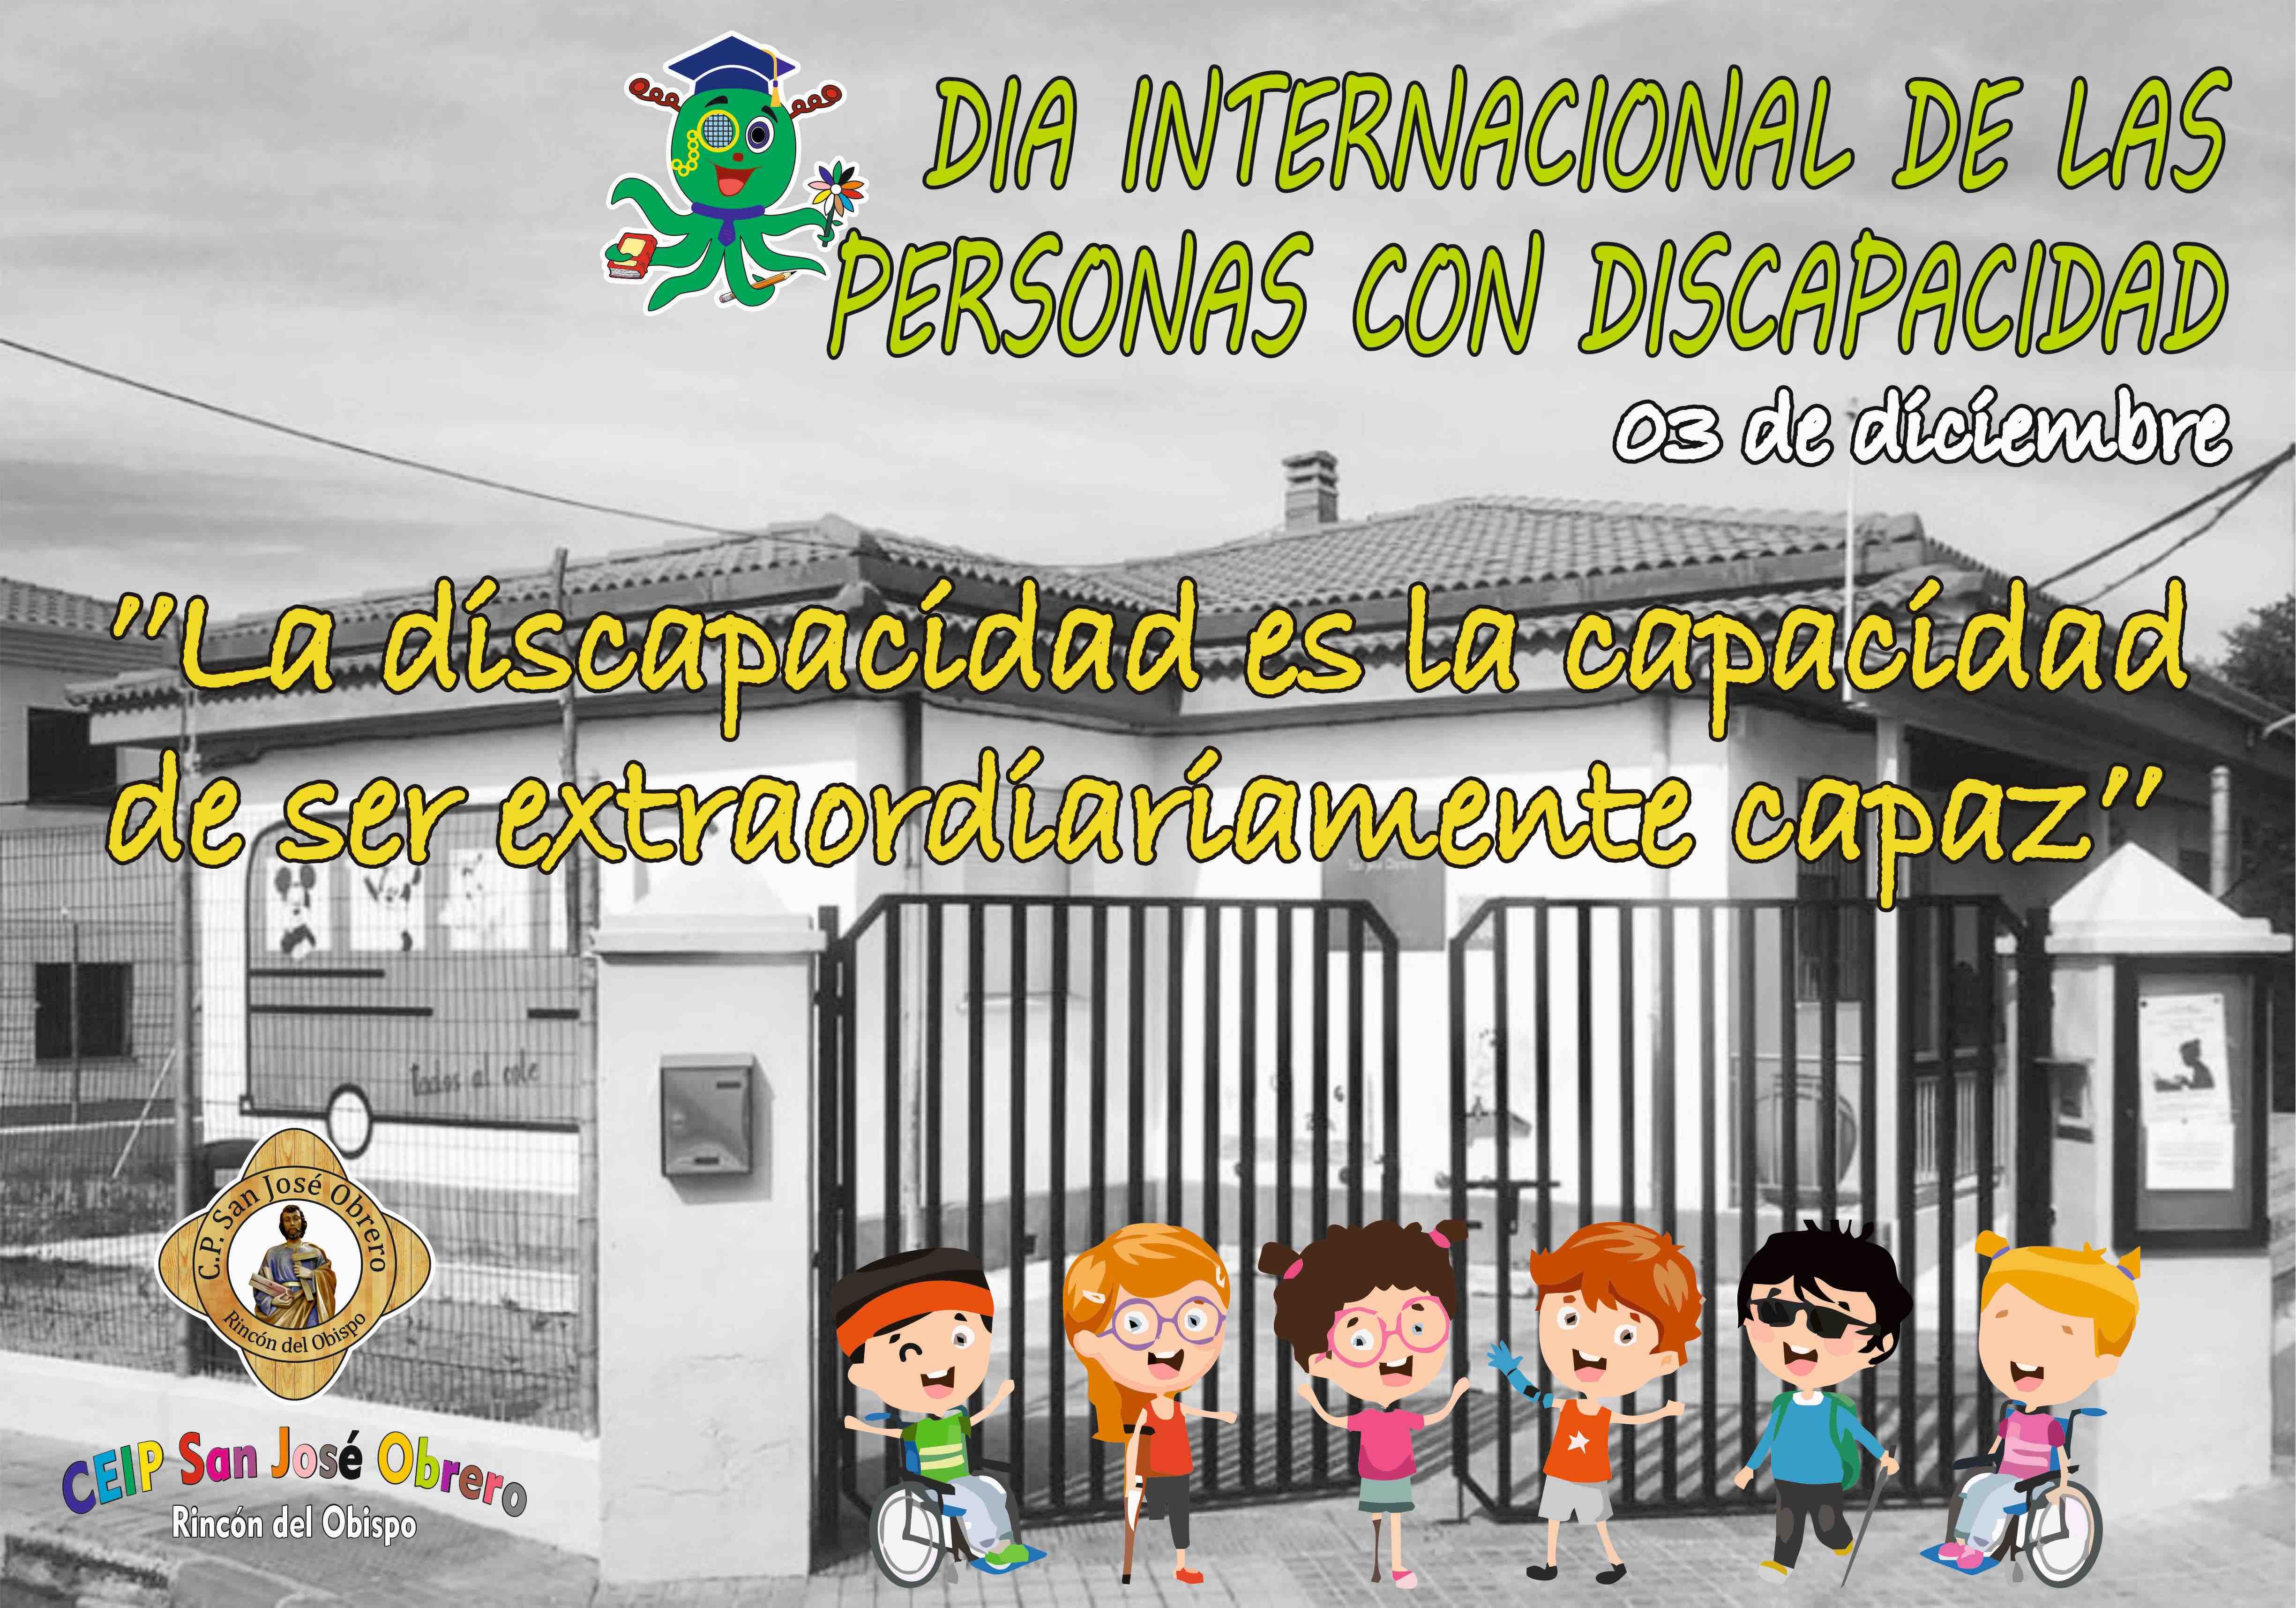 Cartel Dia internacional personas con discapacidad